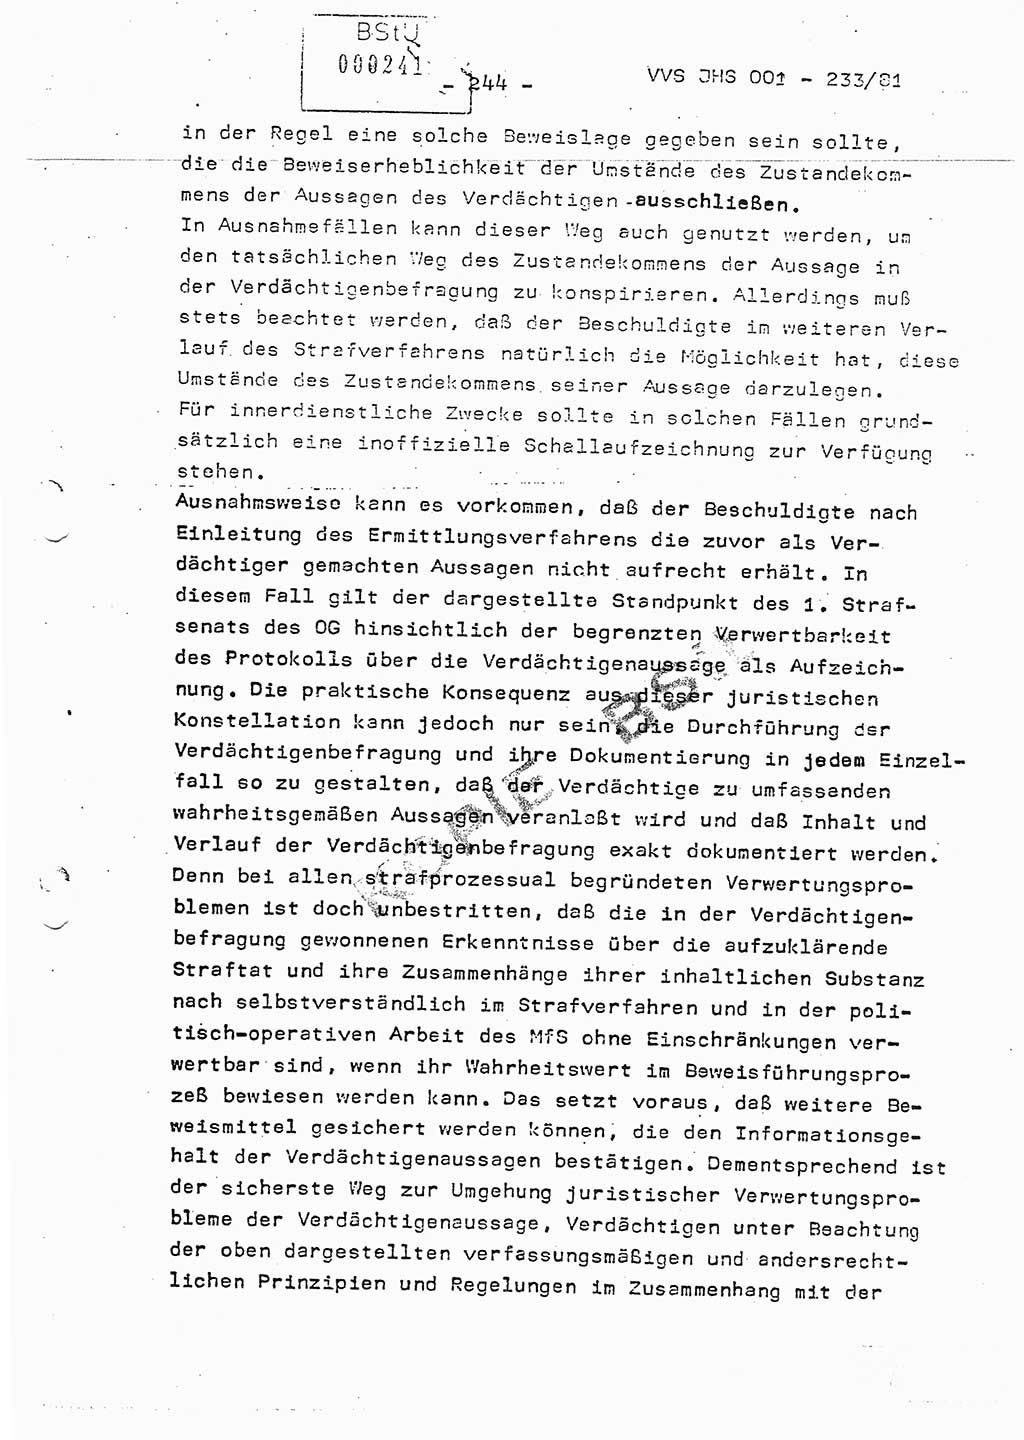 Dissertation Oberstleutnant Horst Zank (JHS), Oberstleutnant Dr. Karl-Heinz Knoblauch (JHS), Oberstleutnant Gustav-Adolf Kowalewski (HA Ⅸ), Oberstleutnant Wolfgang Plötner (HA Ⅸ), Ministerium für Staatssicherheit (MfS) [Deutsche Demokratische Republik (DDR)], Juristische Hochschule (JHS), Vertrauliche Verschlußsache (VVS) o001-233/81, Potsdam 1981, Blatt 244 (Diss. MfS DDR JHS VVS o001-233/81 1981, Bl. 244)